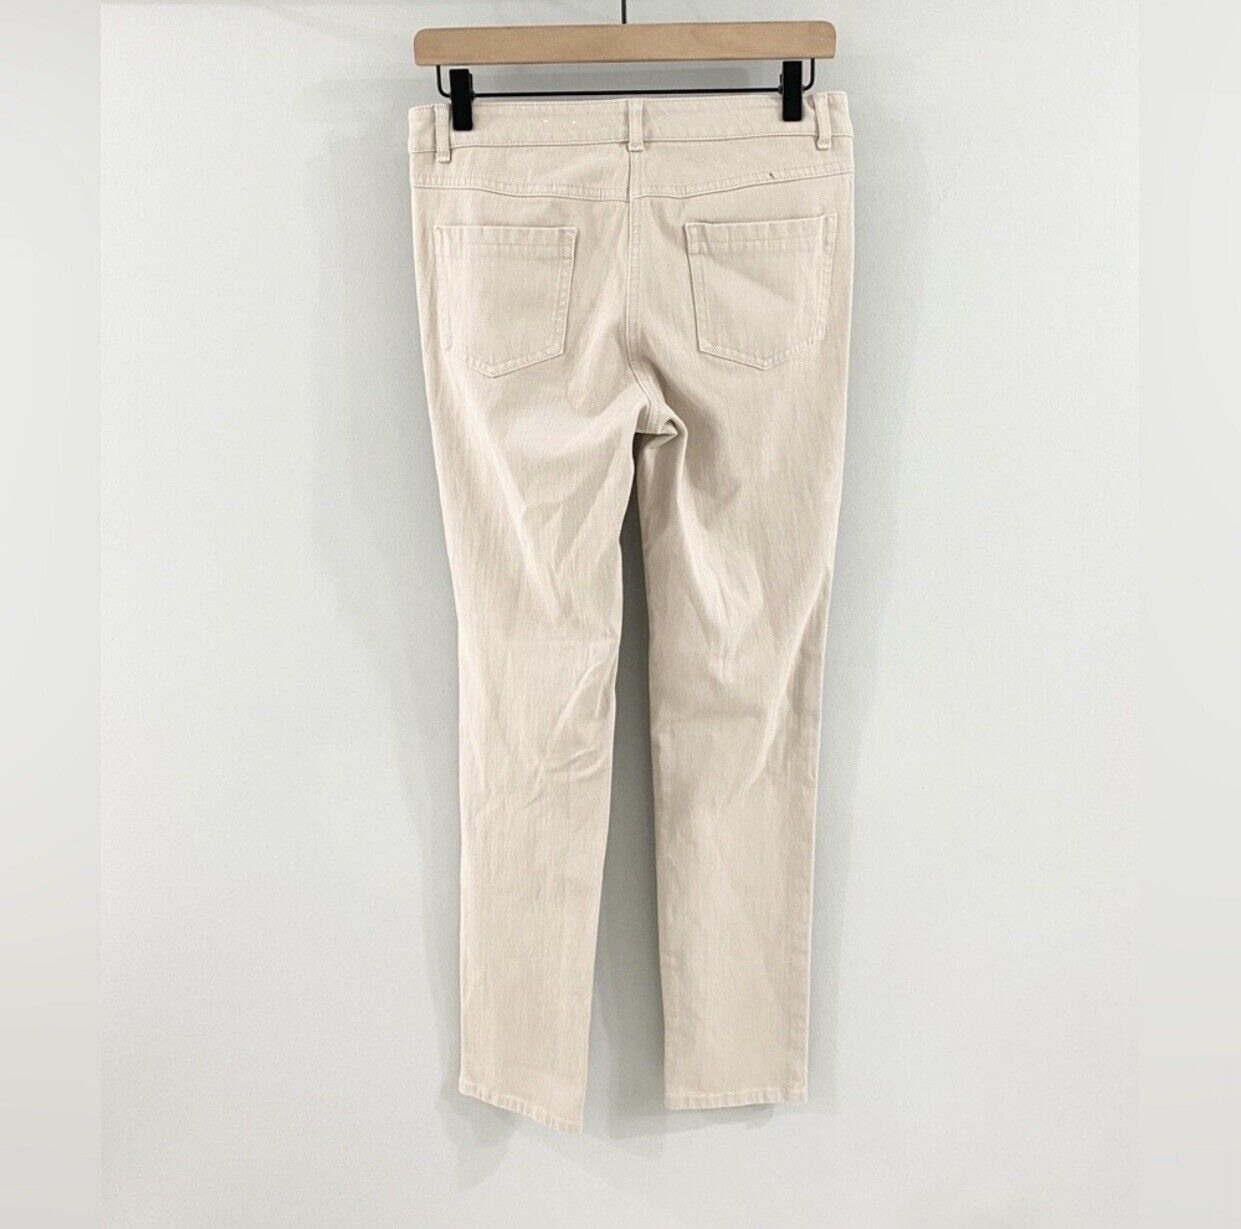 J. McLaughlin Lexi Jeans Beige Size 4 - image 9